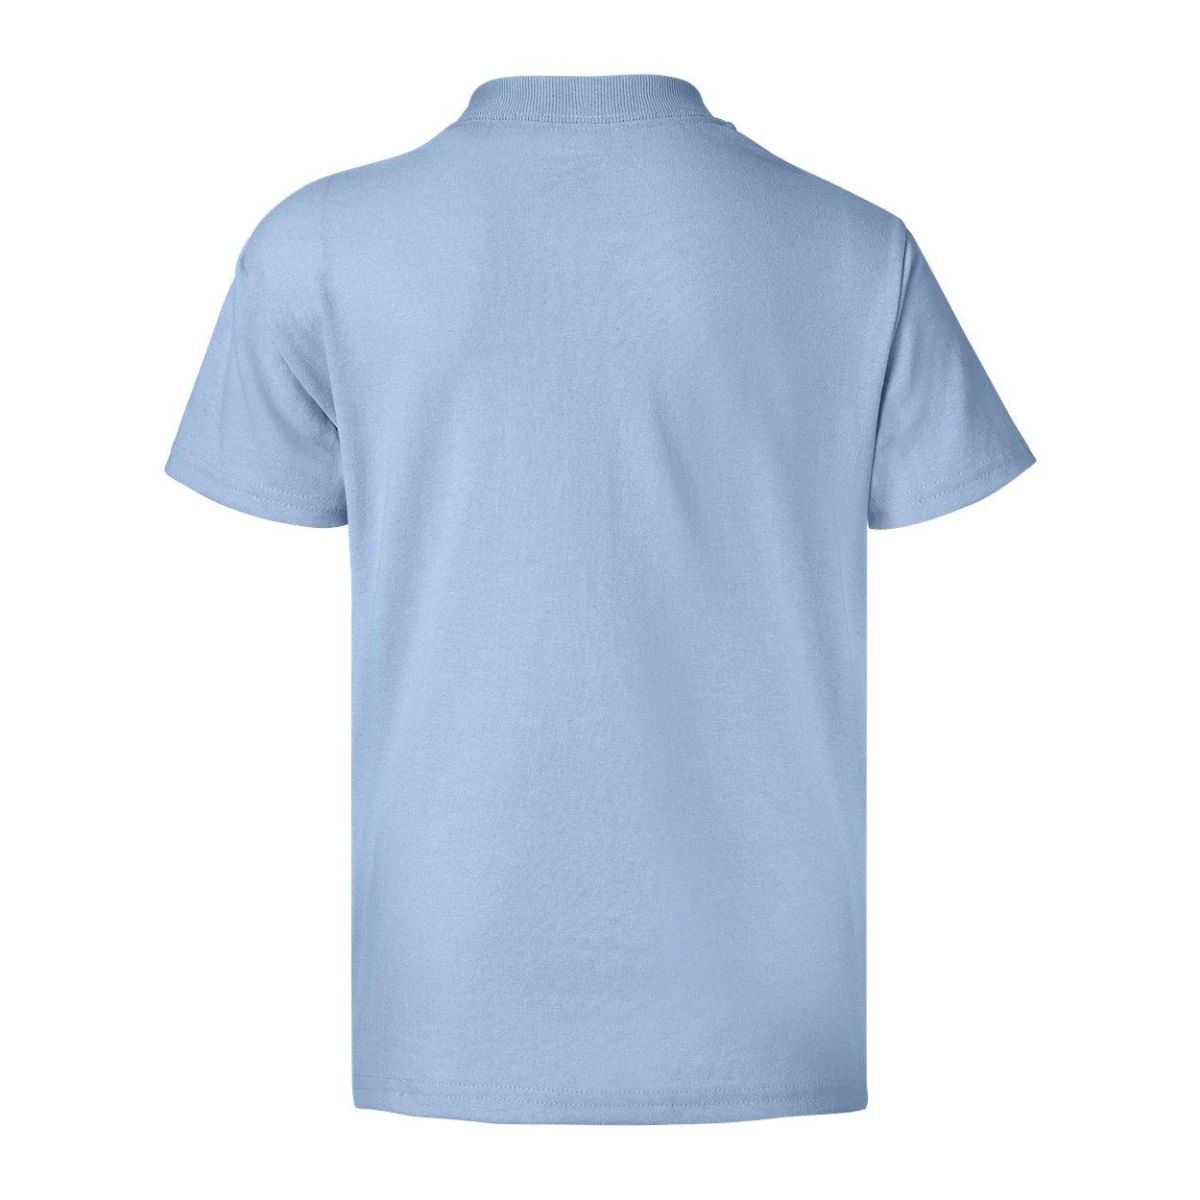 цена Молодежная футболка Ecosmart Floso, голубой